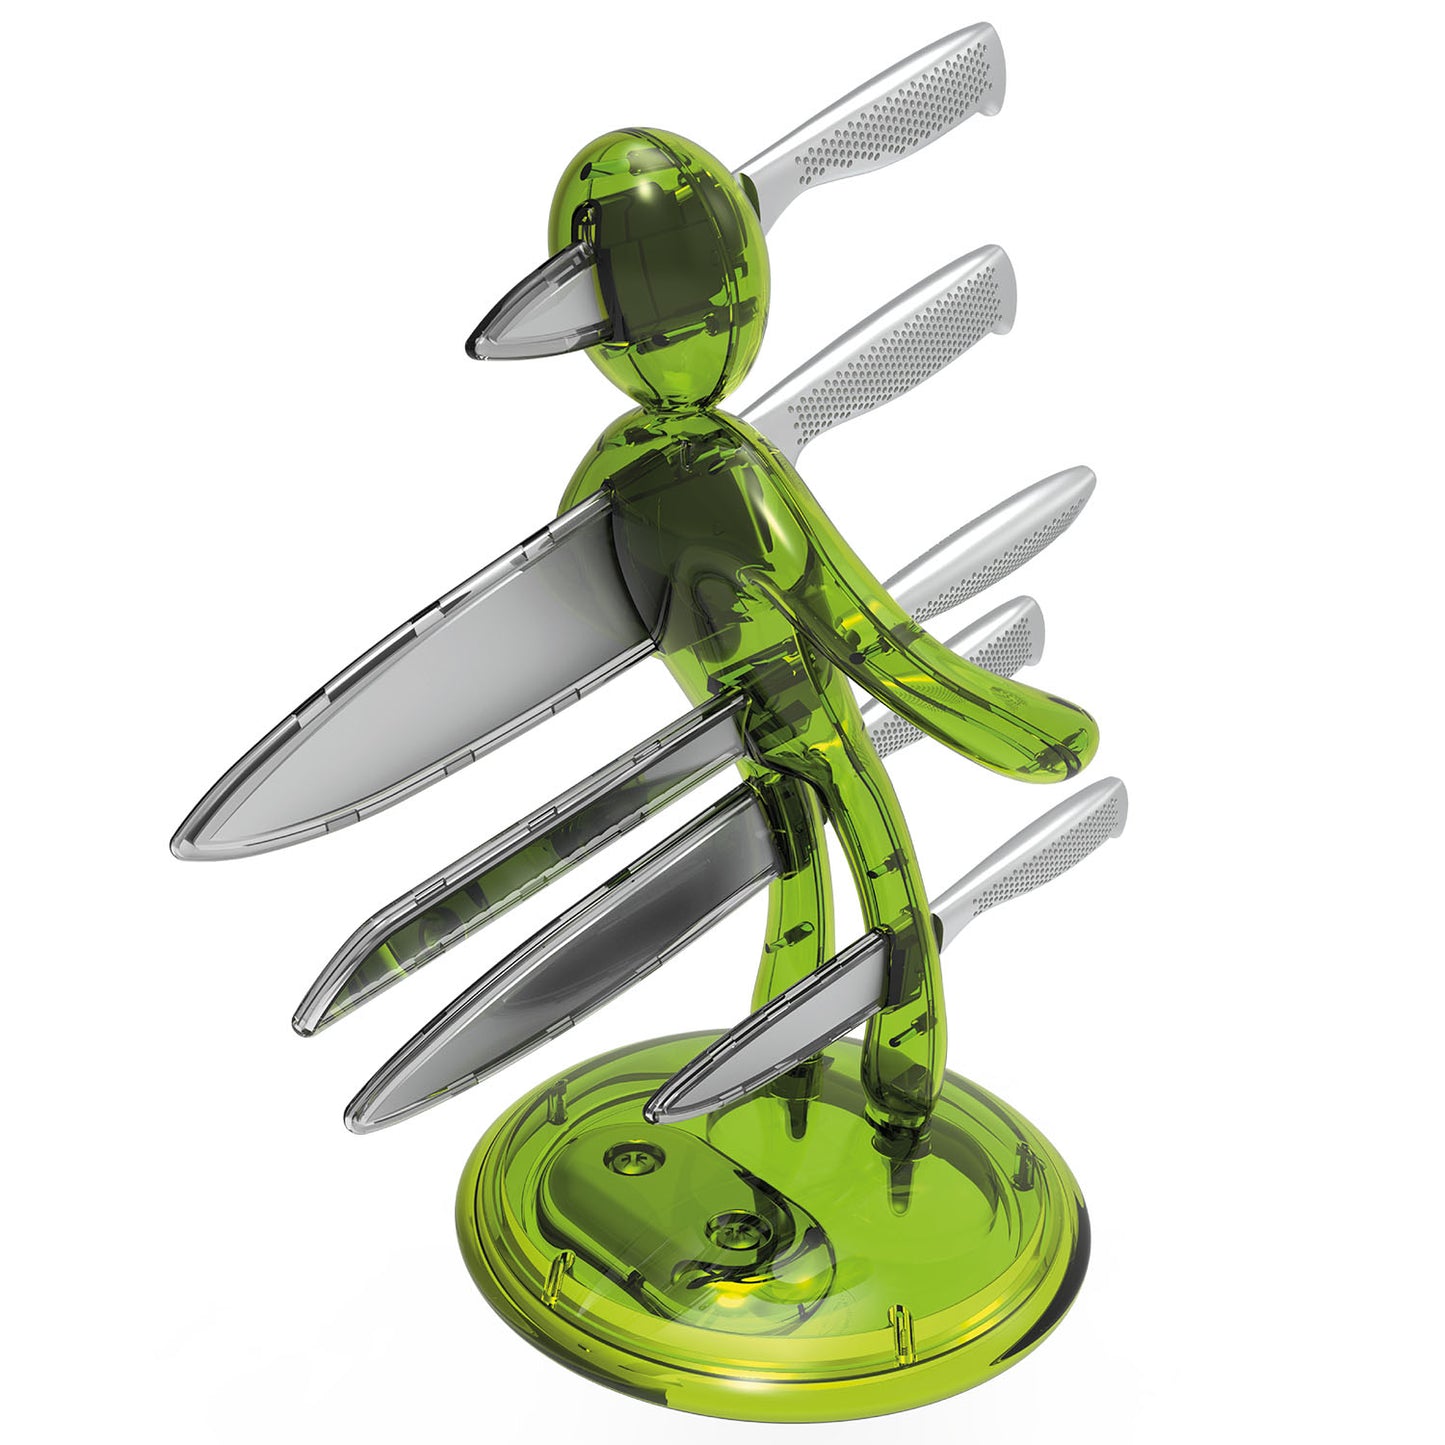 Voodoo/TheEx “Classic Edition” 刀具套装 - 绿色半透明塑料刀架